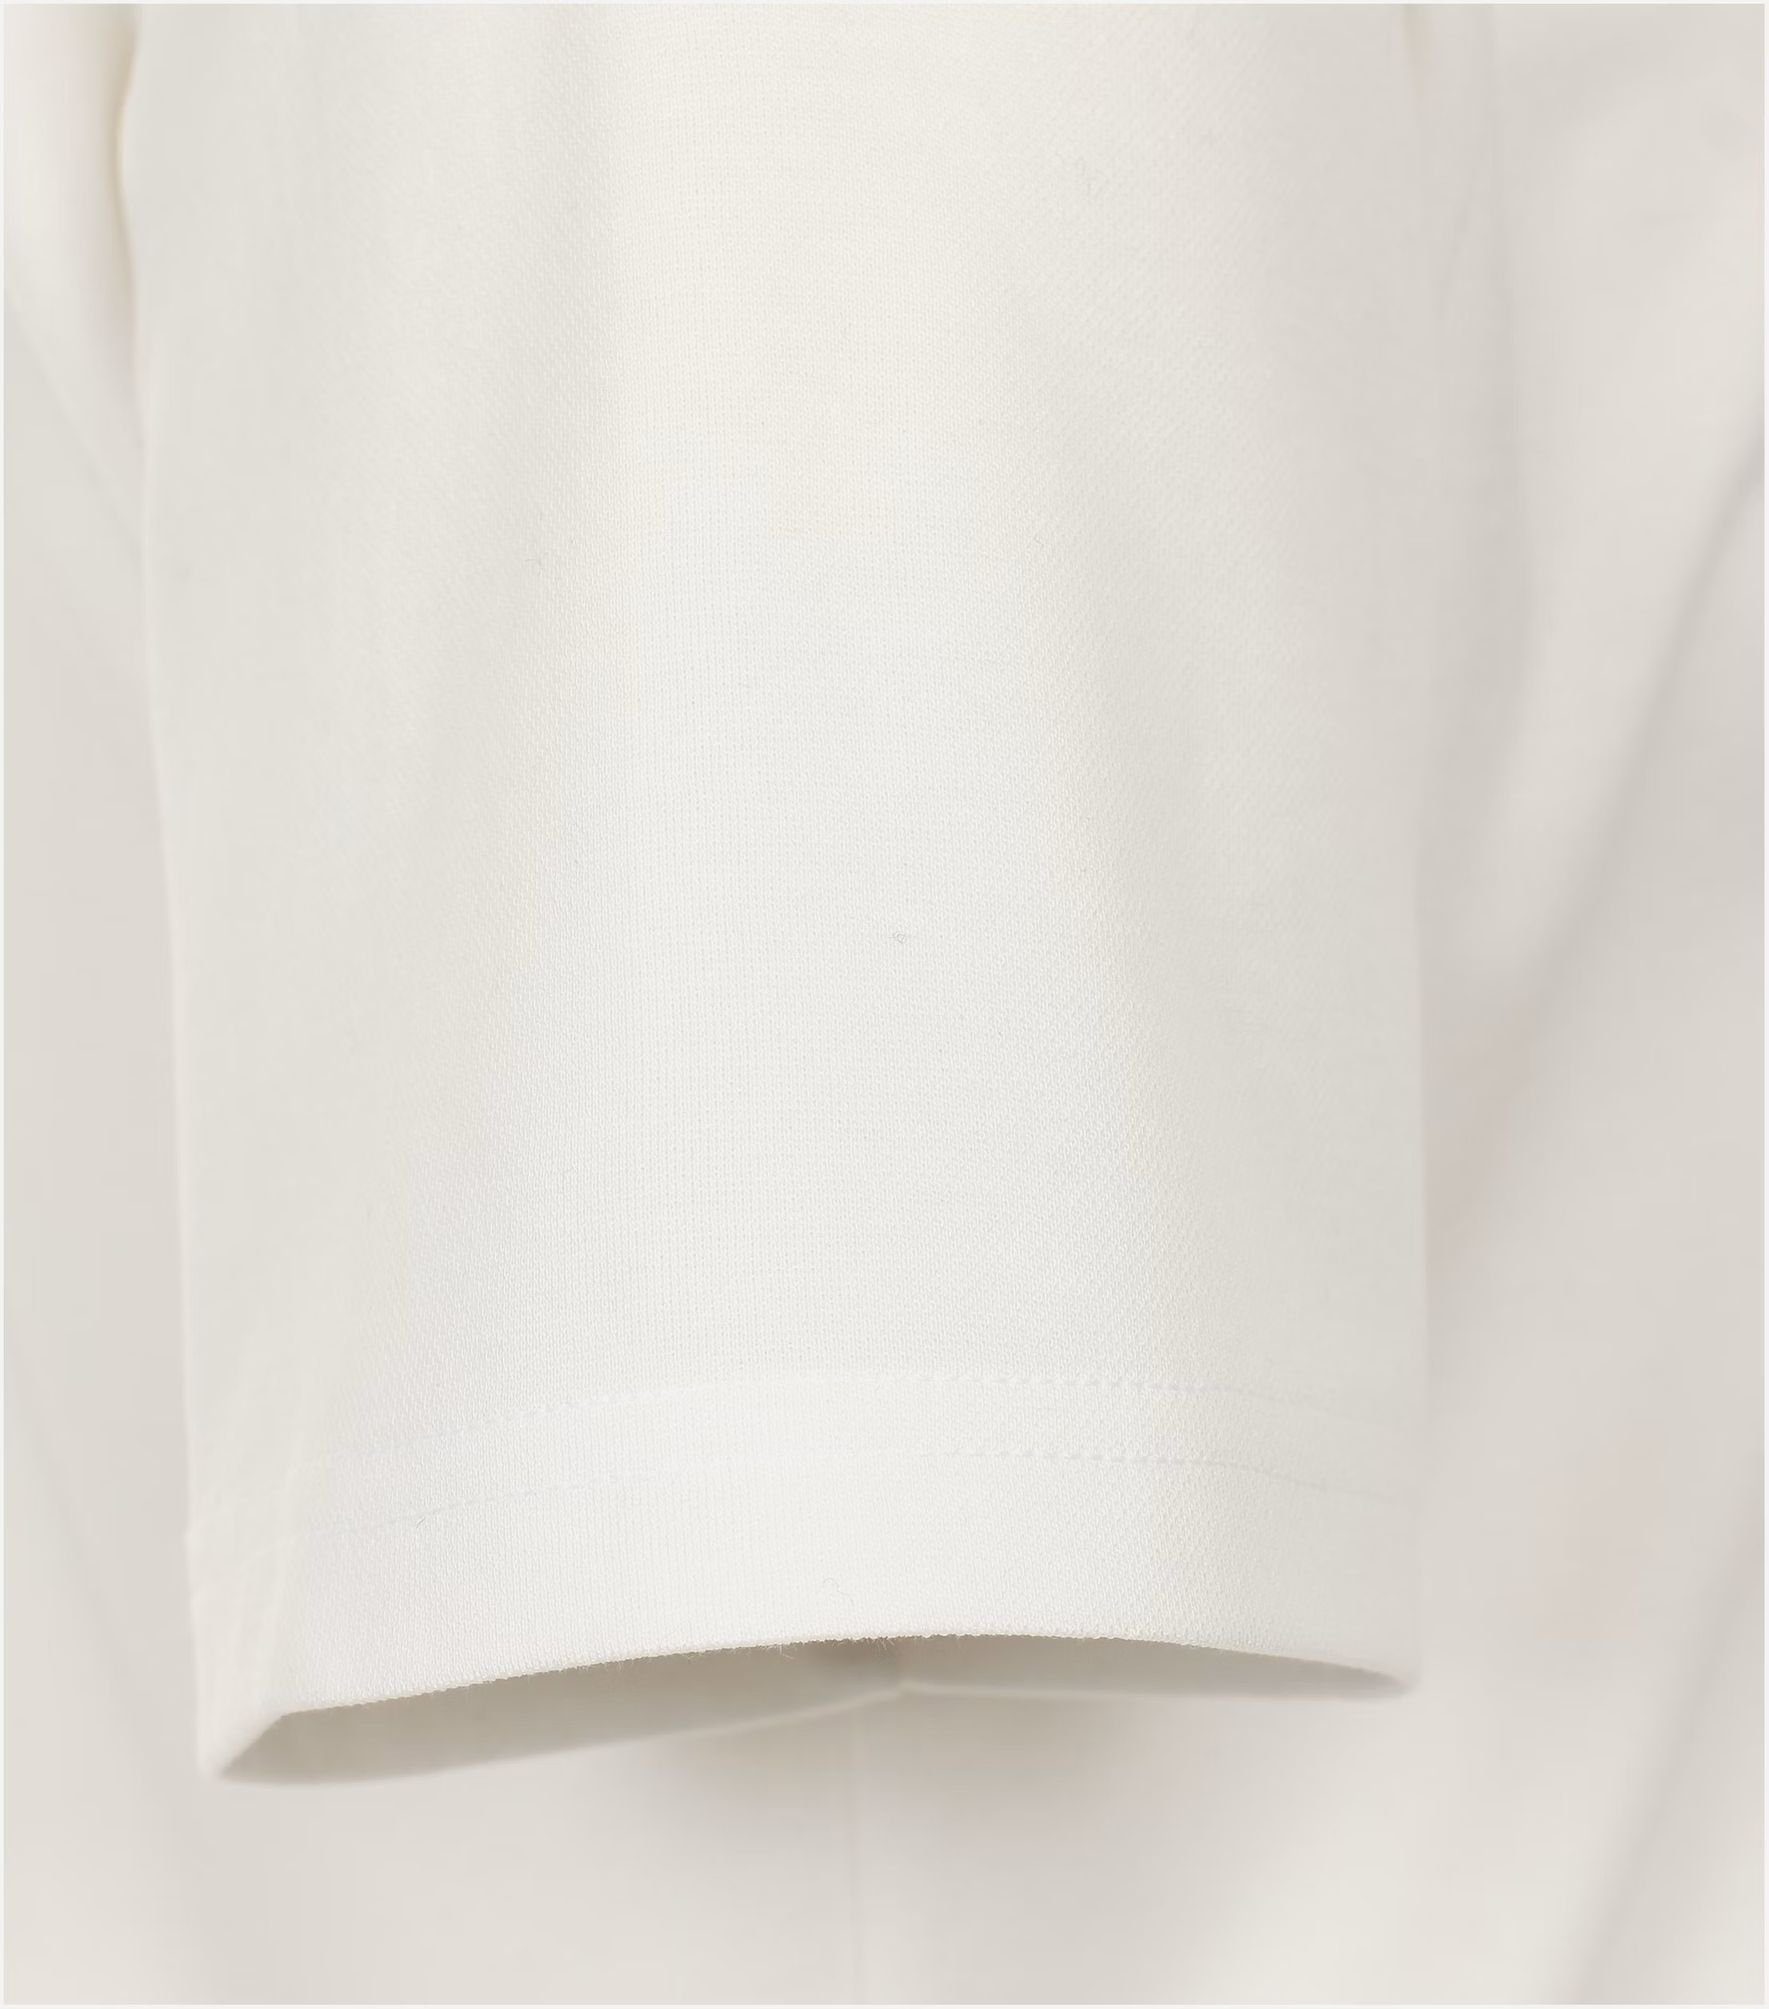 pflegeleicht Weiß(0) 231930650 T-Shirt Redmond